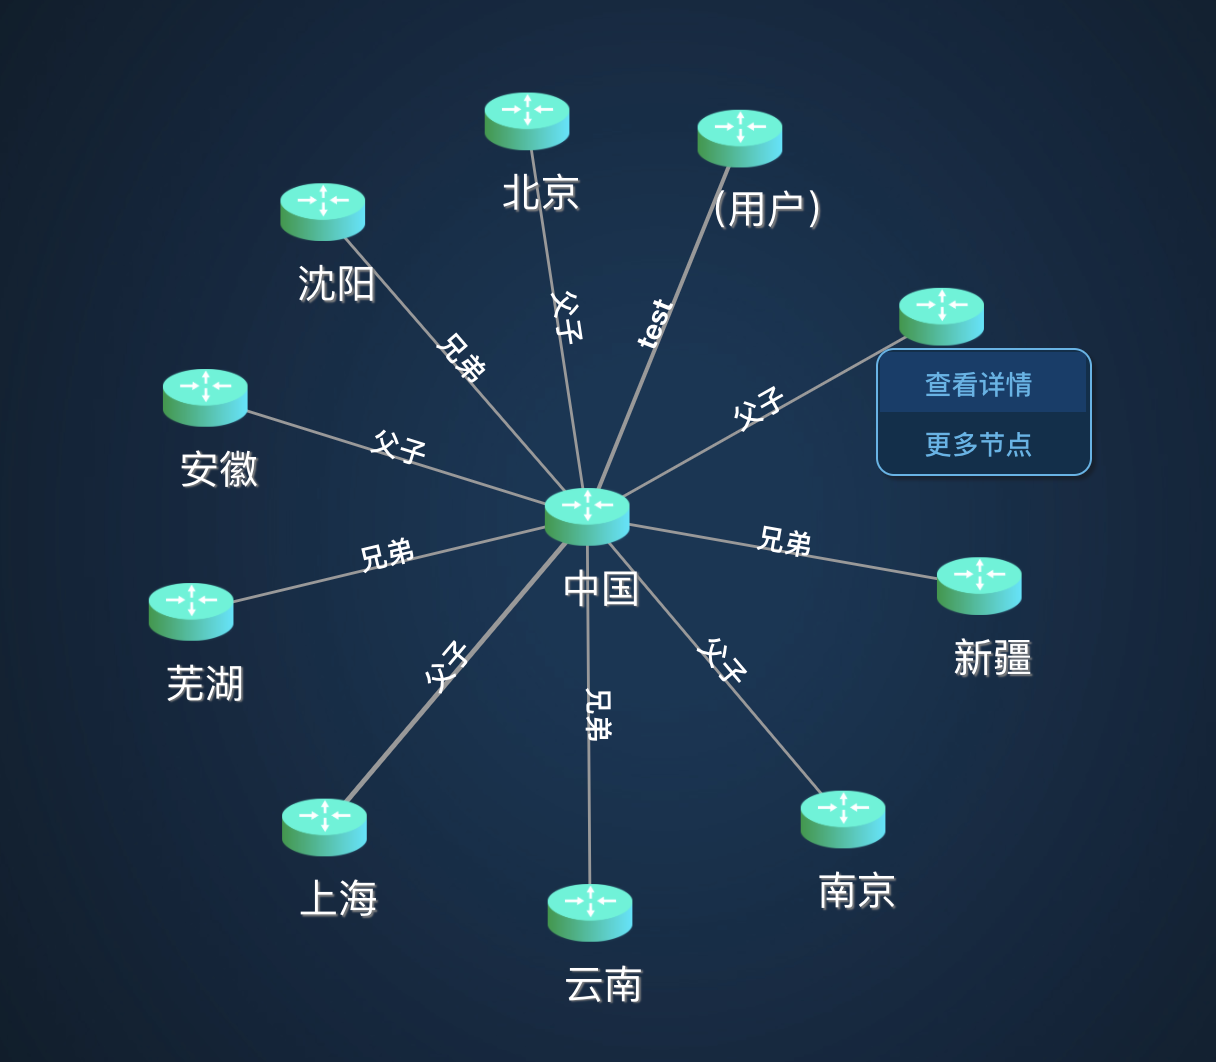 仿Neo4j里的知识图谱，利用d3+vue开发的一个网络拓扑图第3张